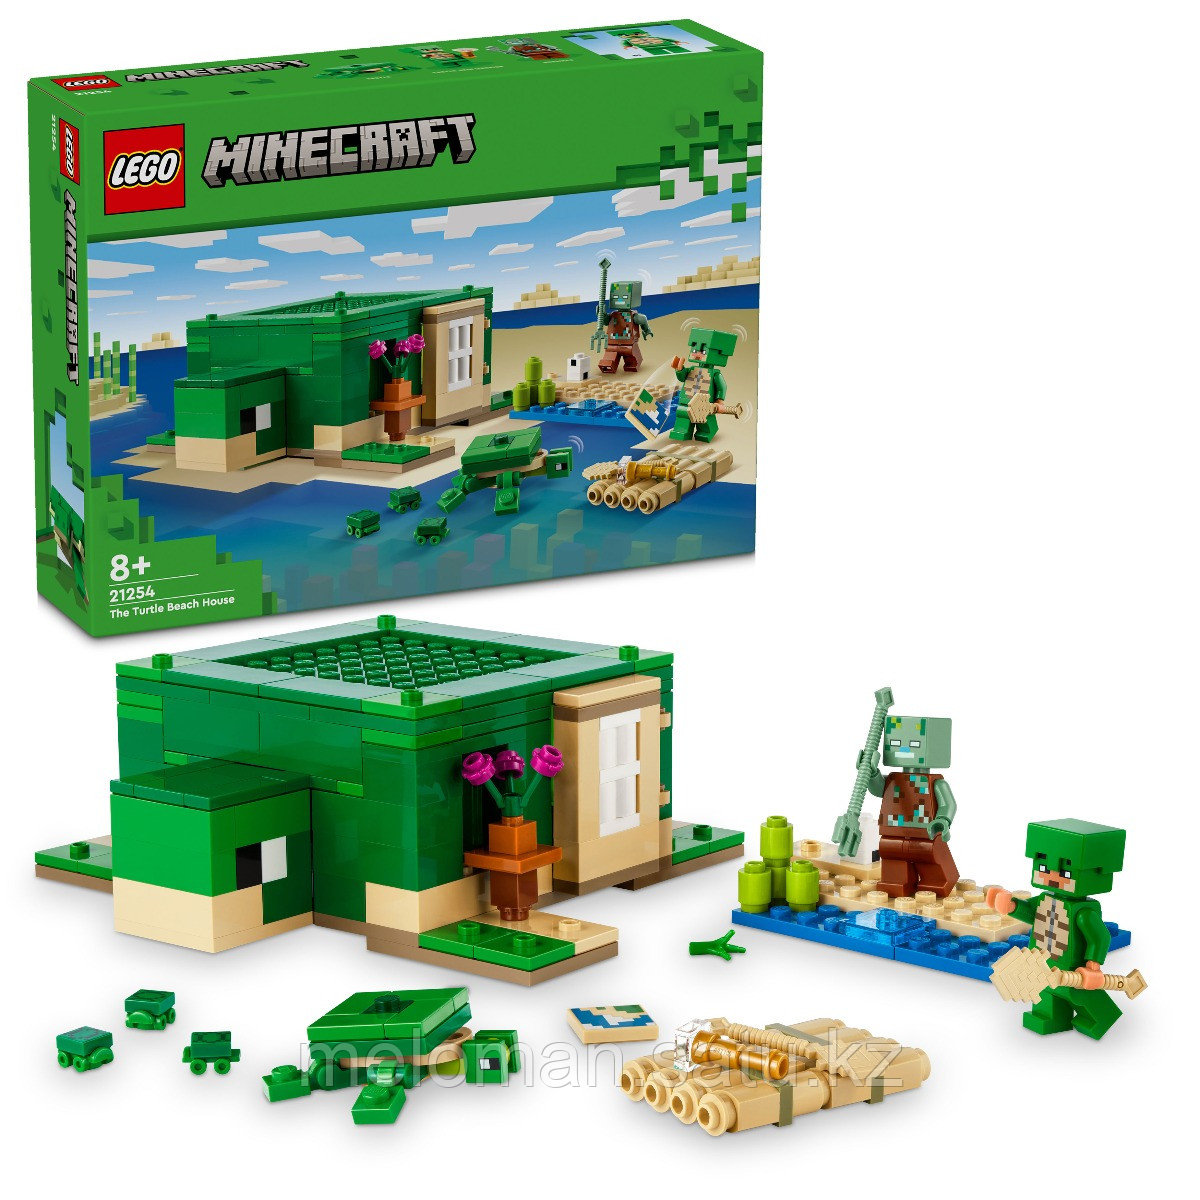 LEGO: Пляжный домик «Черепаха» Minecraft 21254